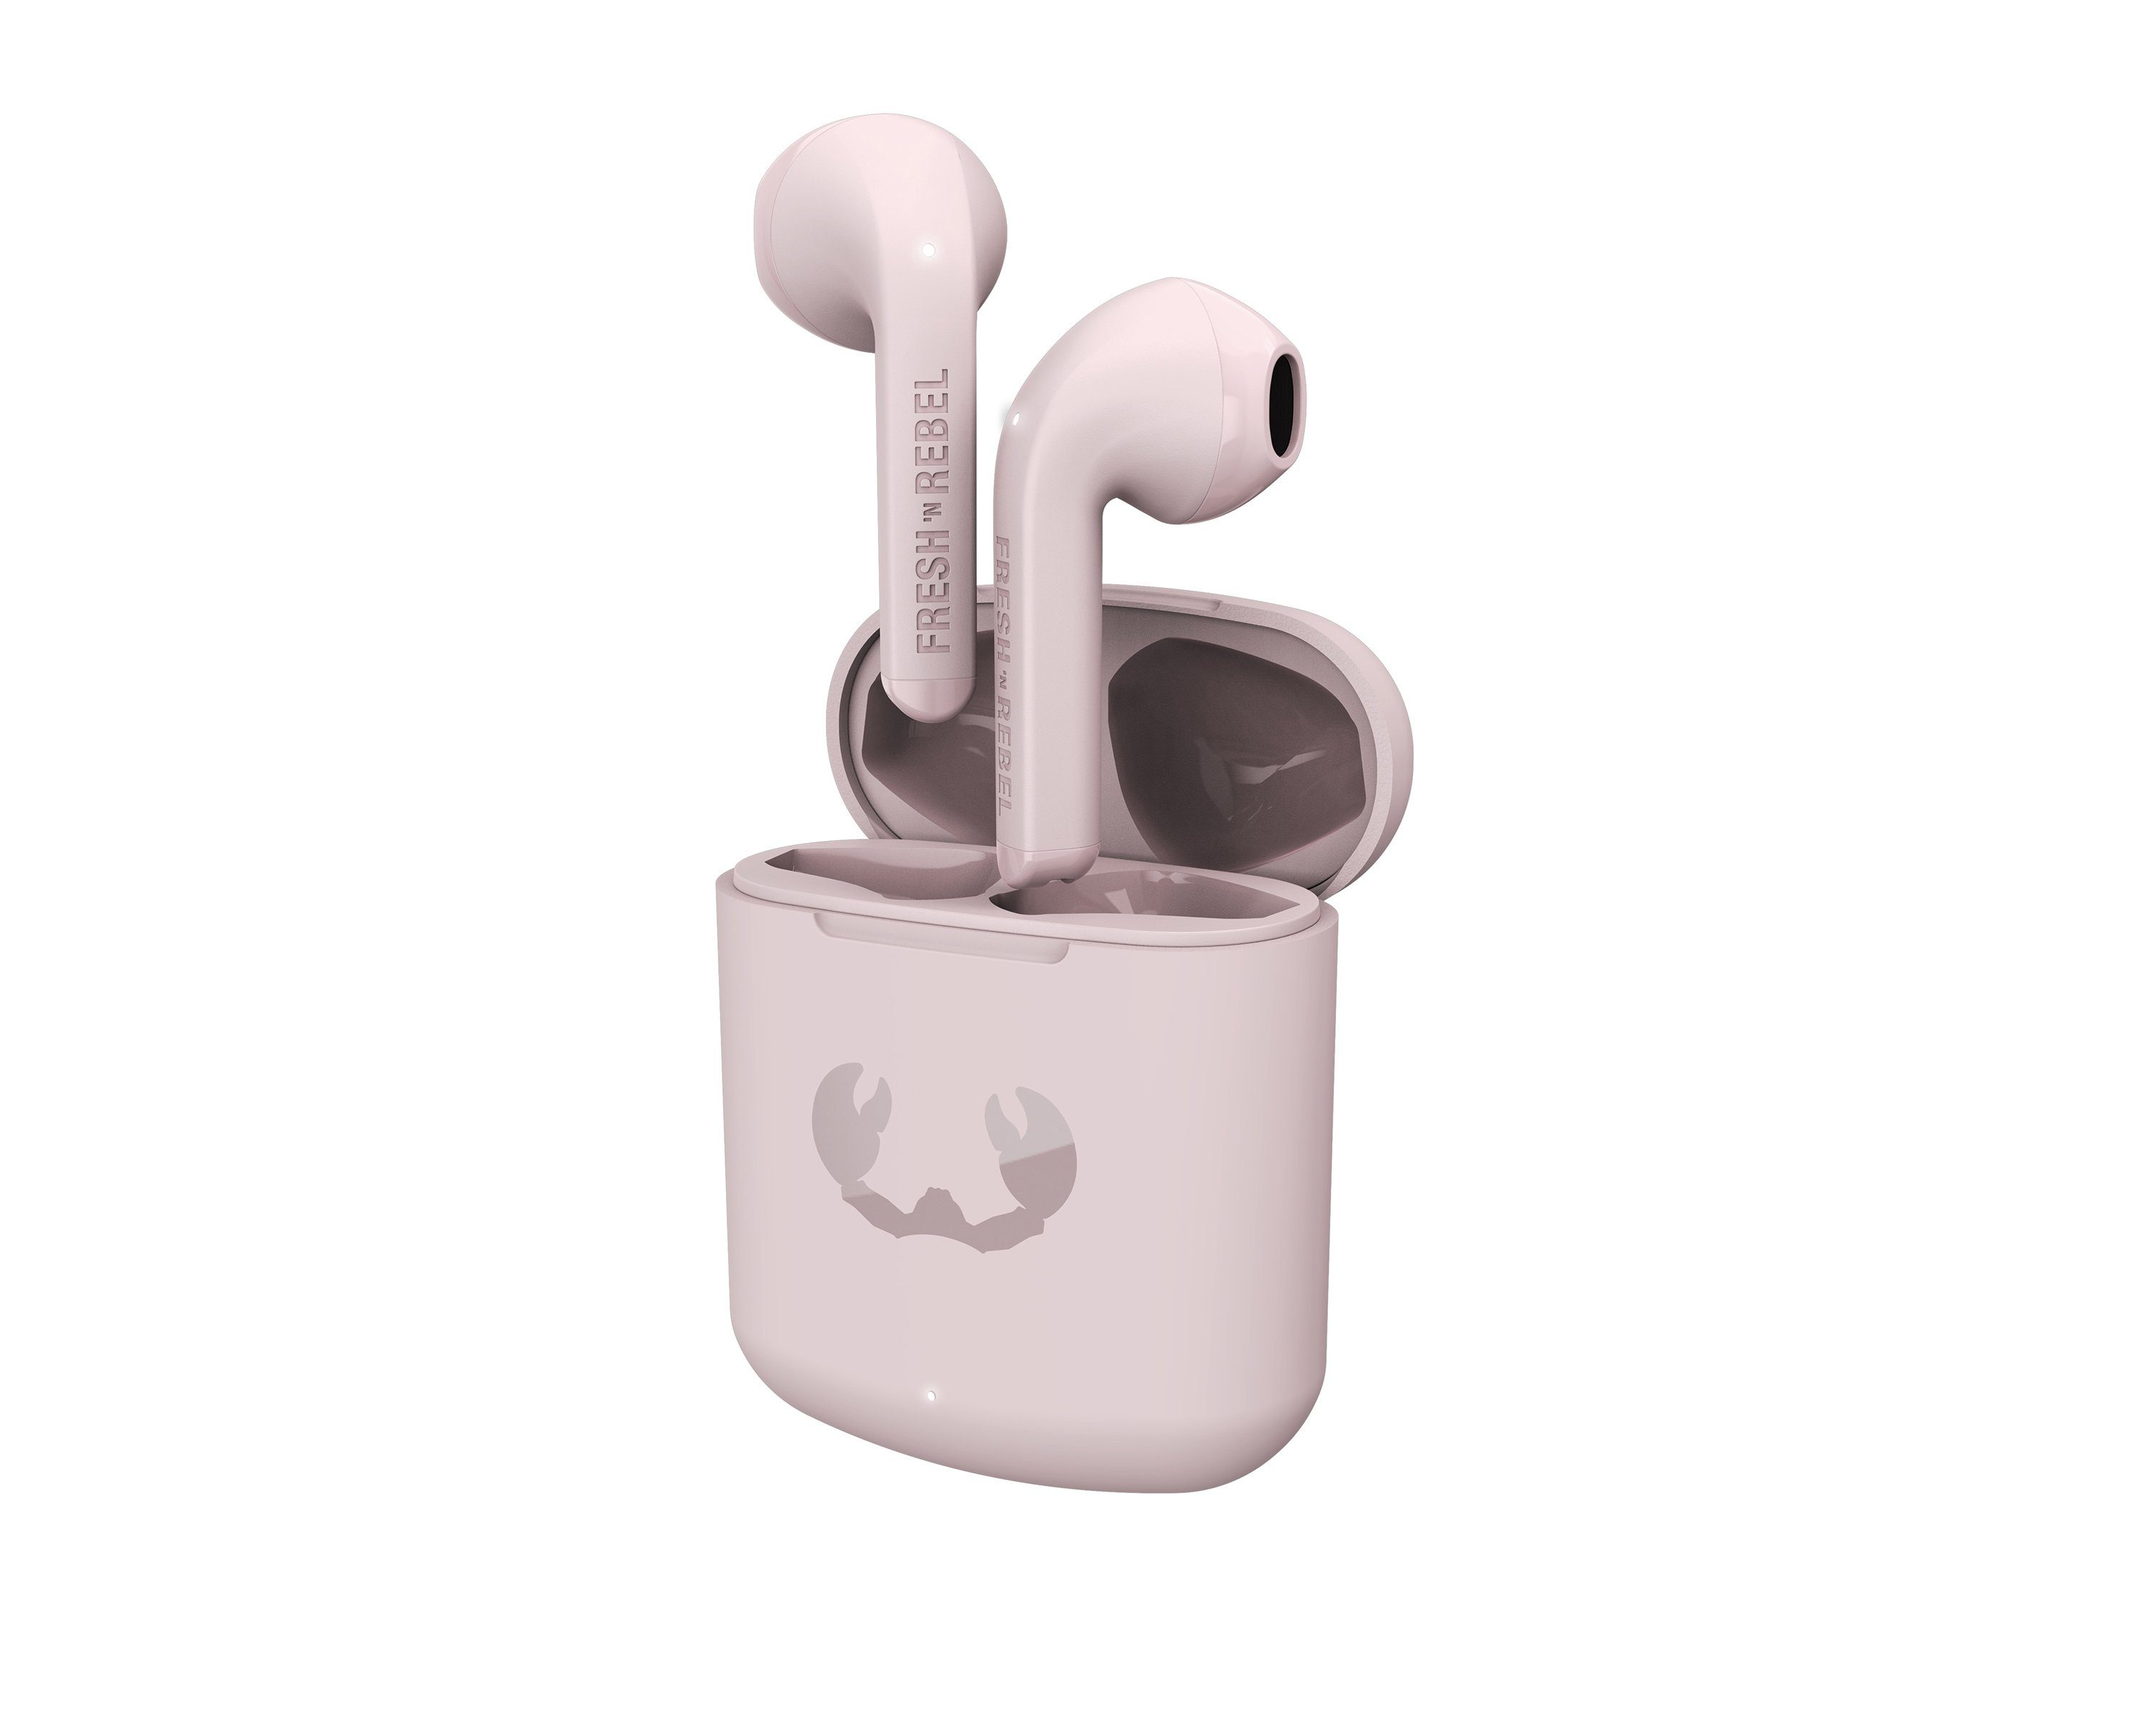 Auto-Kopplung) Smokey Kopfhörer Touch-Control-Steuerung, Twins Core (Dual-Master-Funktion, Pink Rebel Fresh´n